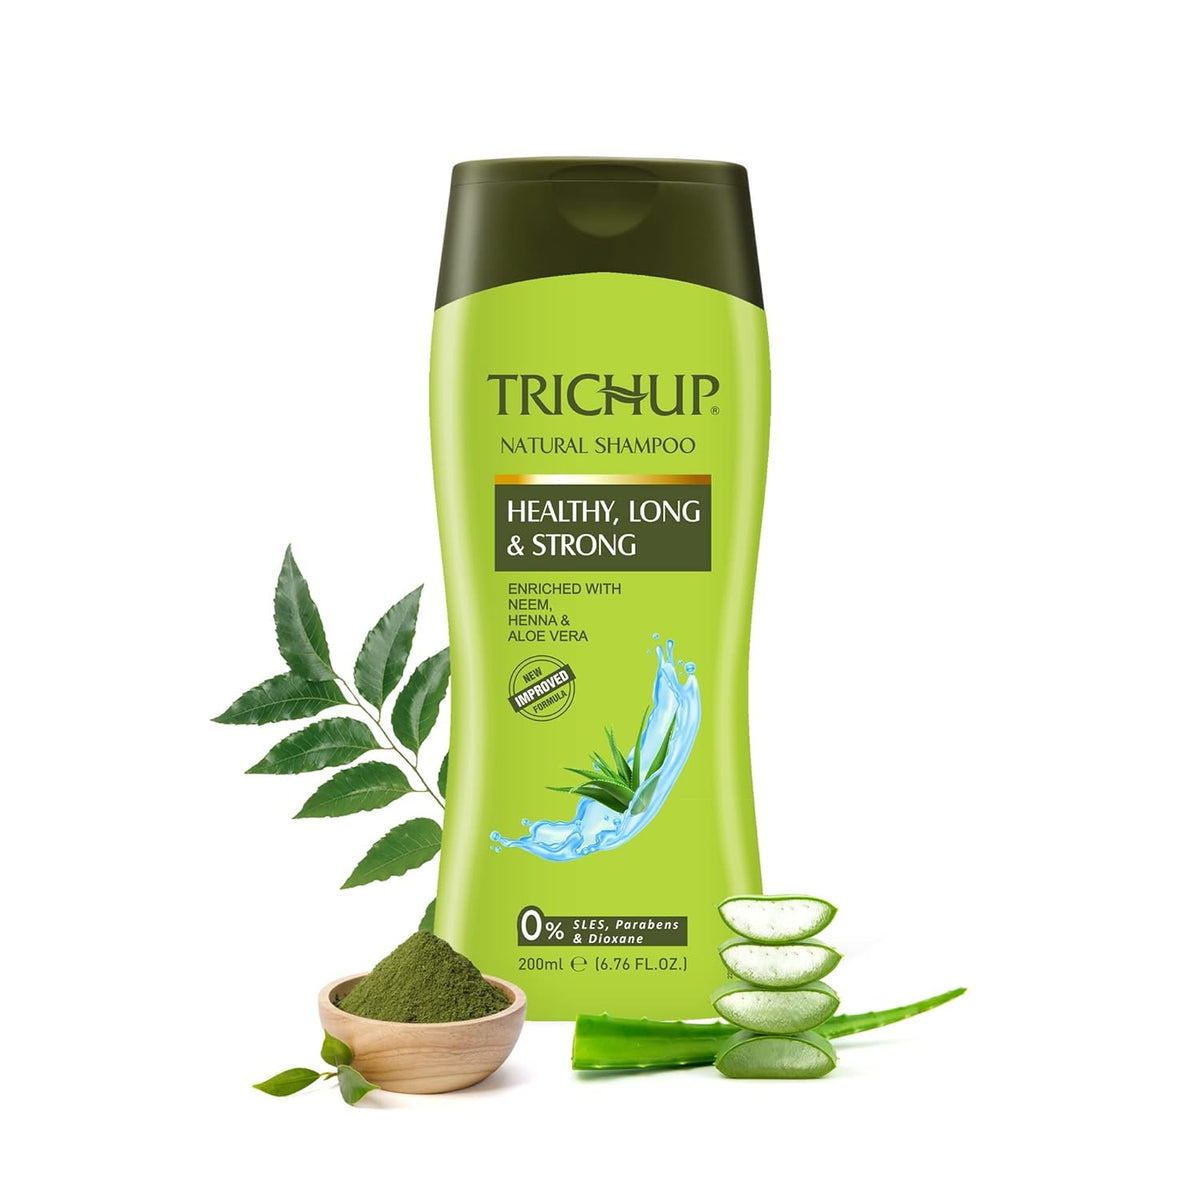 Vasus Ayurvedic Trichup Healthy,Long & Strong Natural Shampoo